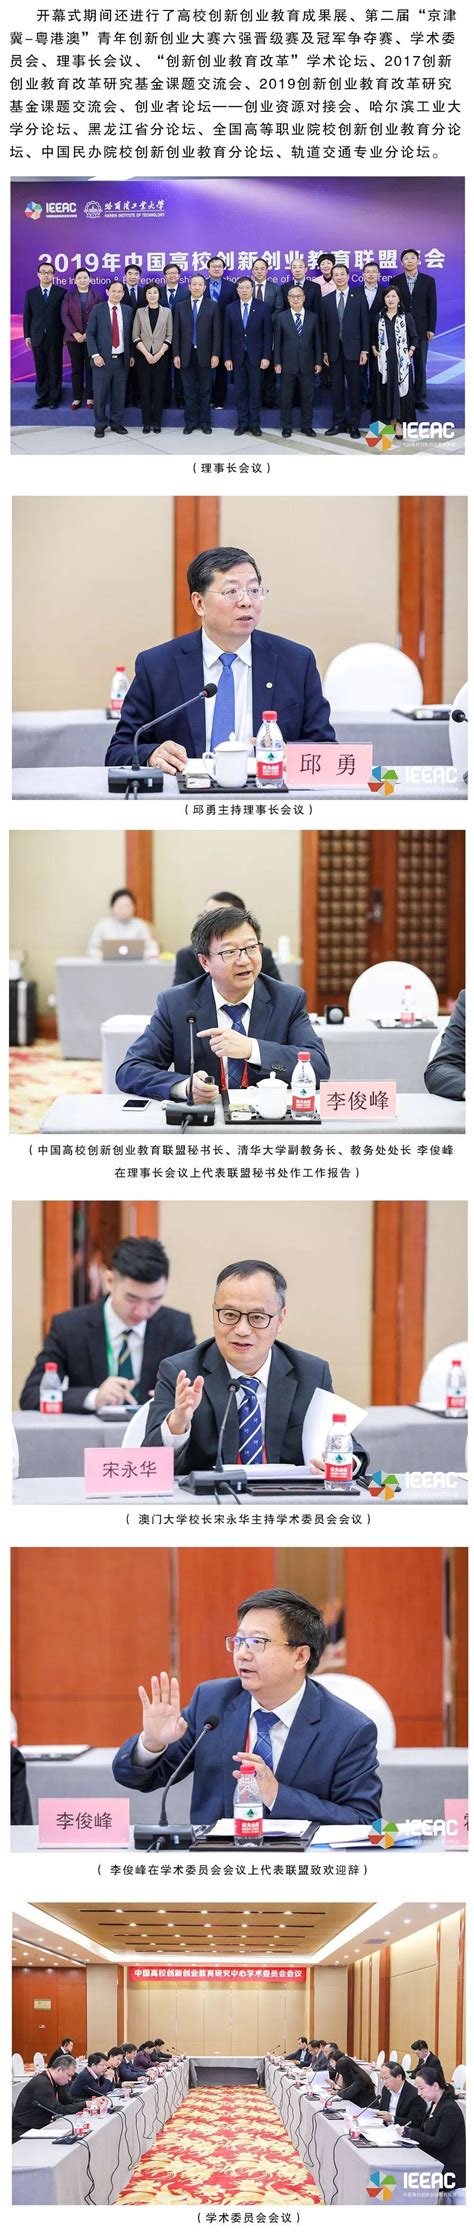 学校召开2018中国高校创新创业教育联盟年会协调会-西安交通大学新闻网